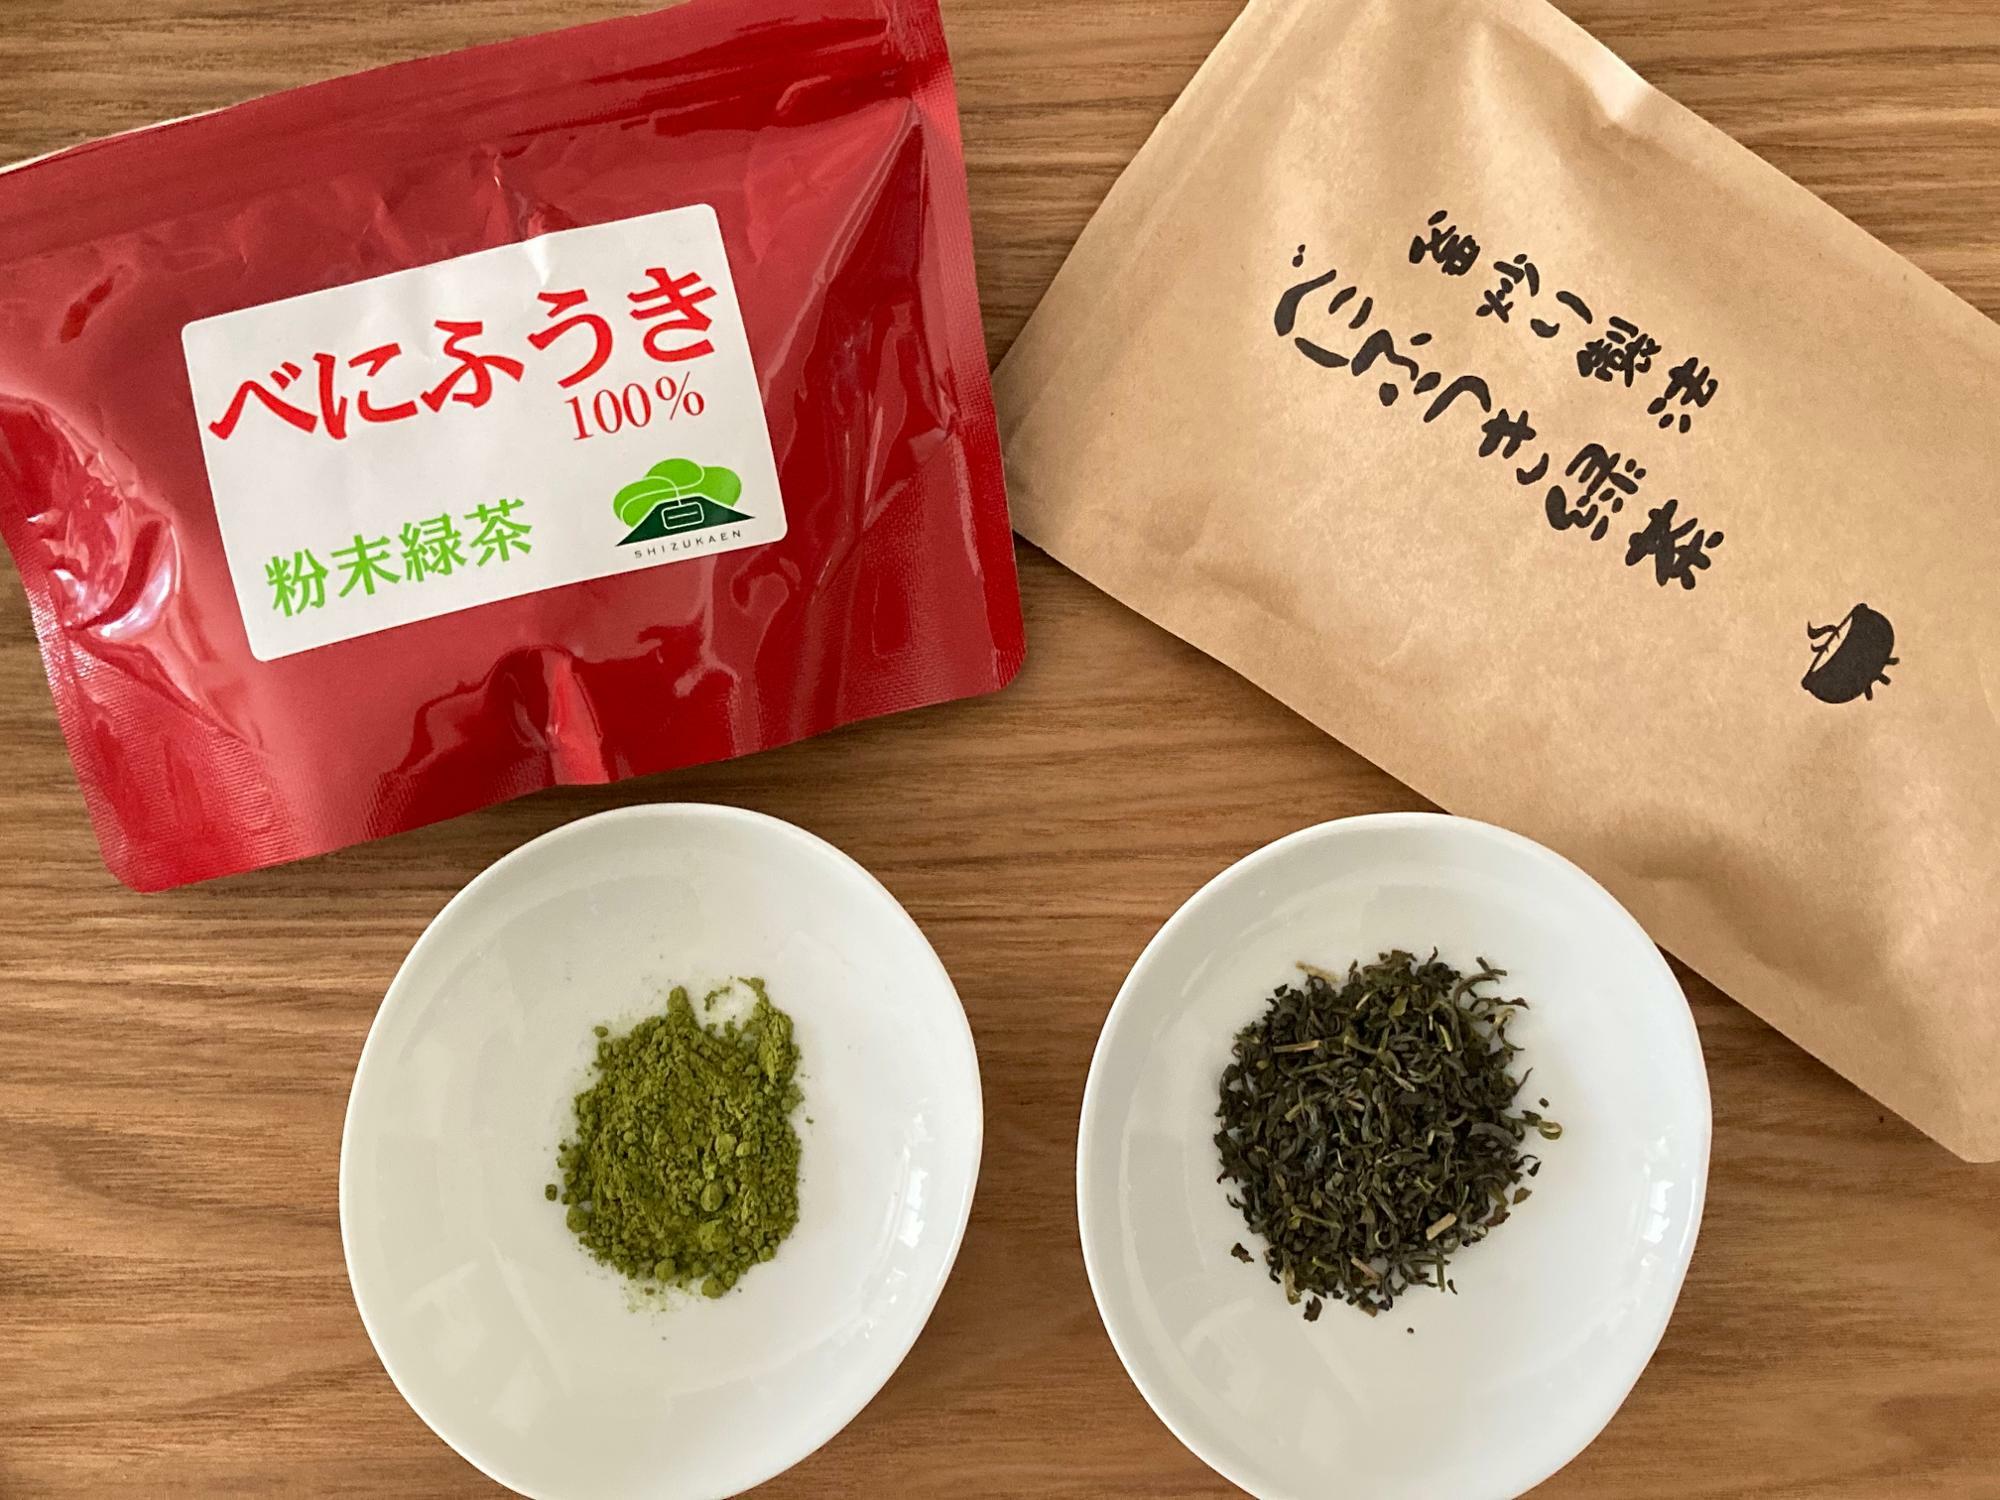 左が粉末、右はリーフのべにふうき緑茶